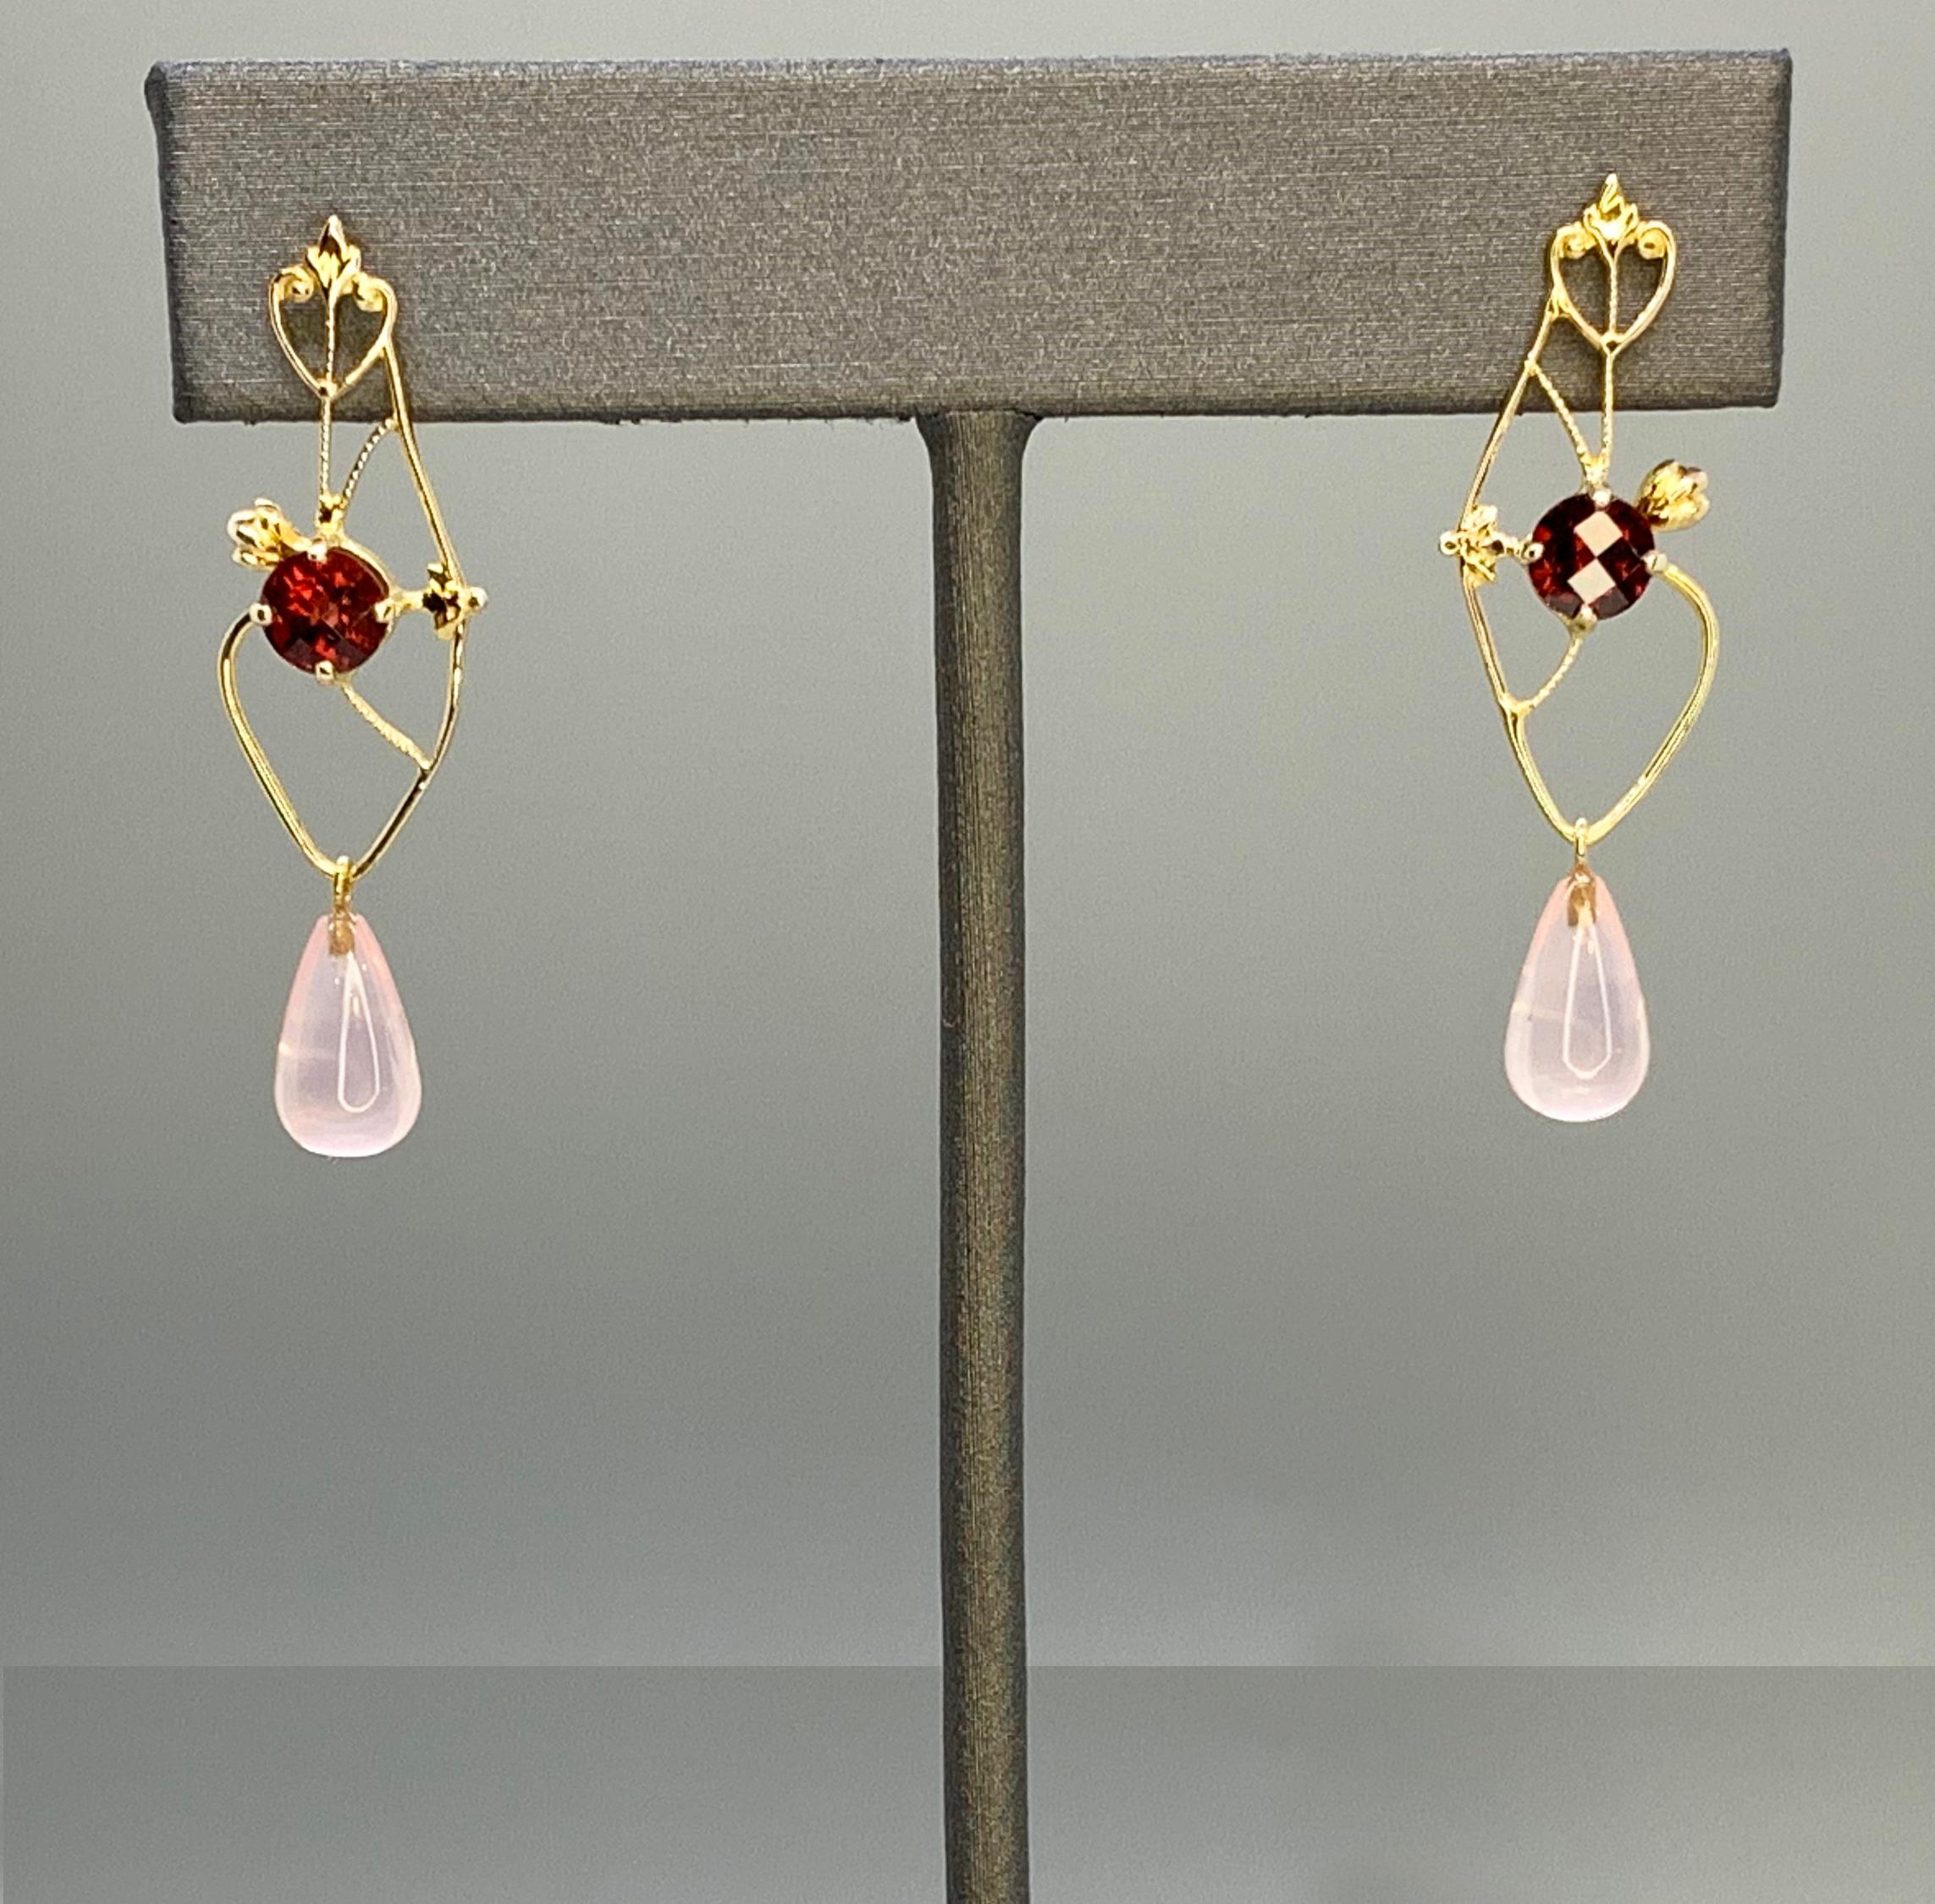 Ces boucles d'oreilles briolettes en grenat et quartz rose en damier ont été fabriquées avec de l'or jaune 10k upcyclé à partir d'une délicate broche vintage, datant probablement des années 1920. La broche a été soigneusement démontée, réarrangée et